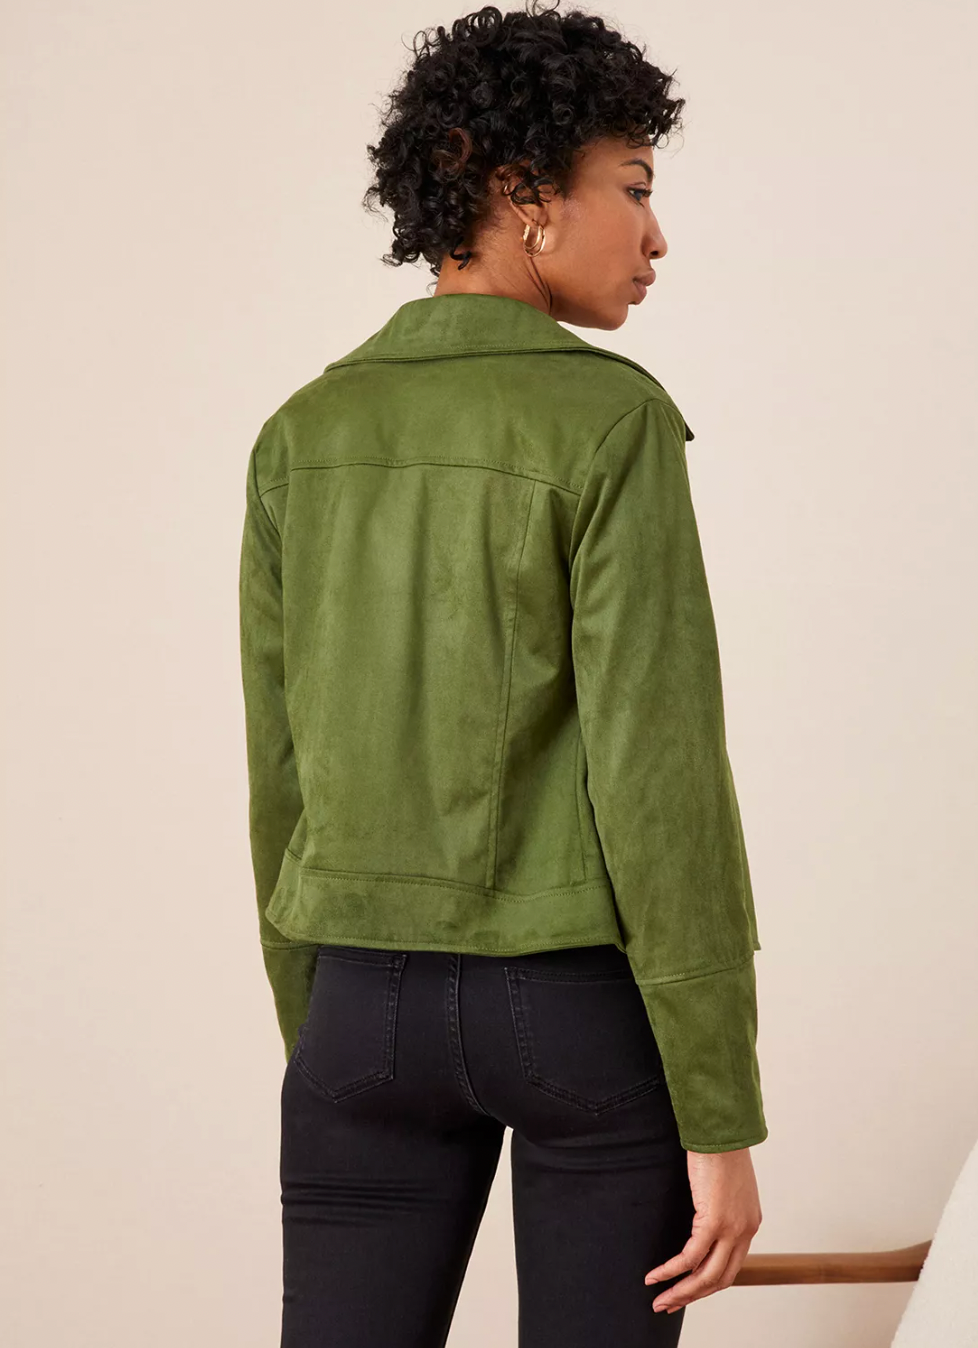 Womens Monsoon Green Suedette Biker Jacket size 10